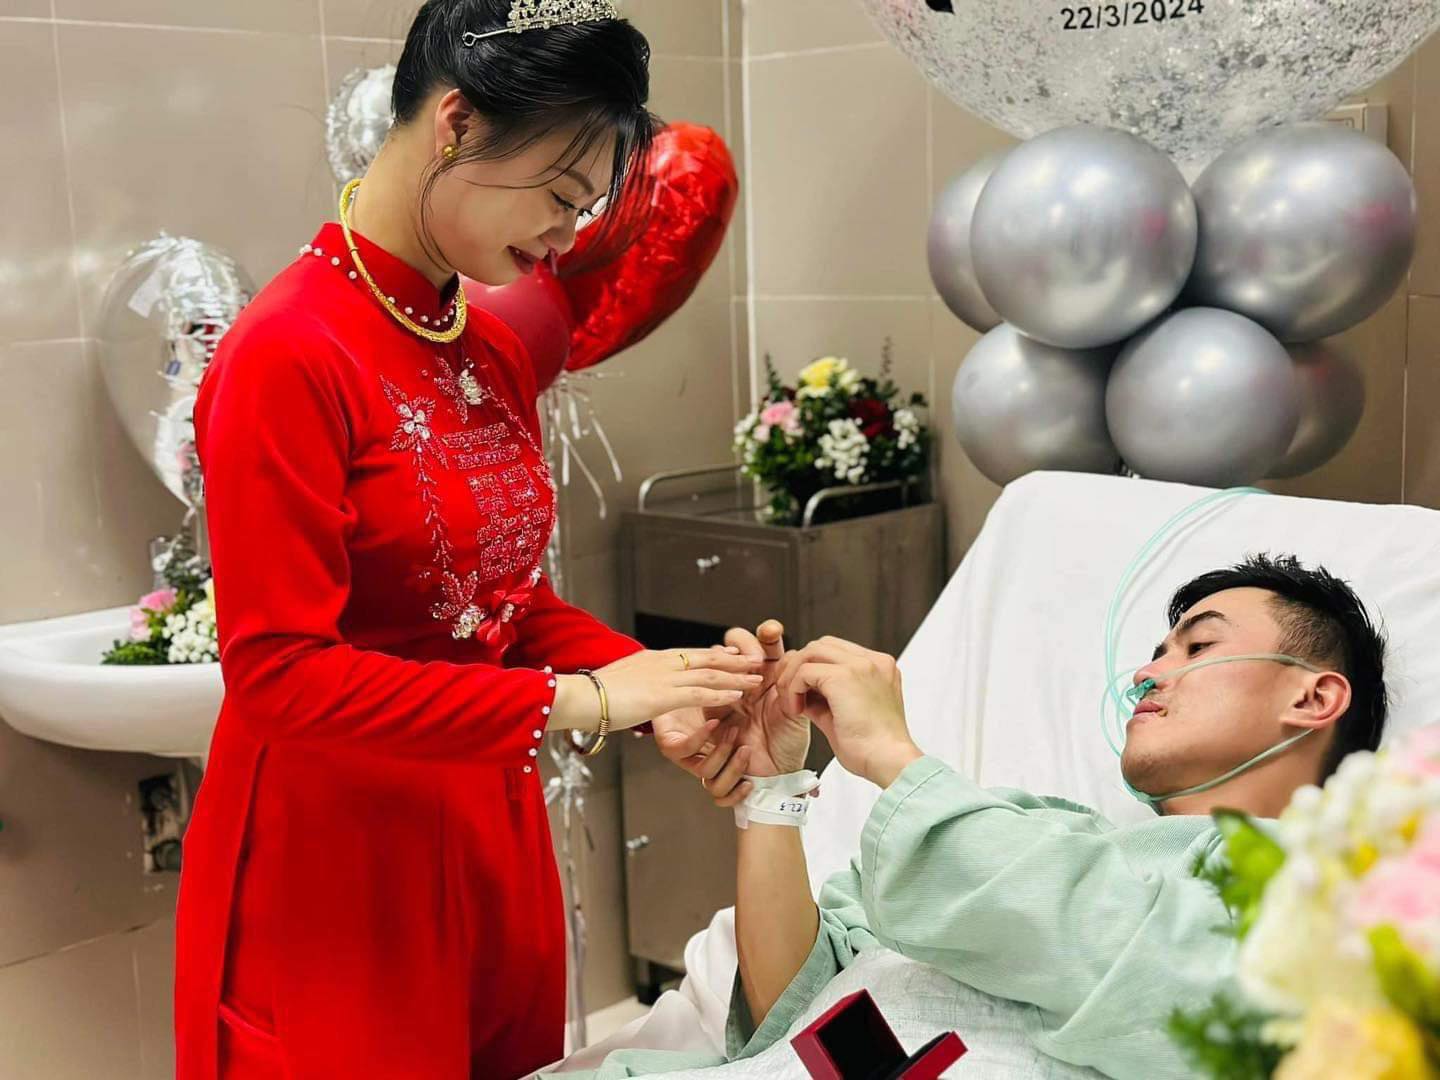 Xúc động đám cưới trong bệnh viện tại Lạng Sơn, cô dâu chú rể trao nhẫn trên giường bệnh - ảnh 3